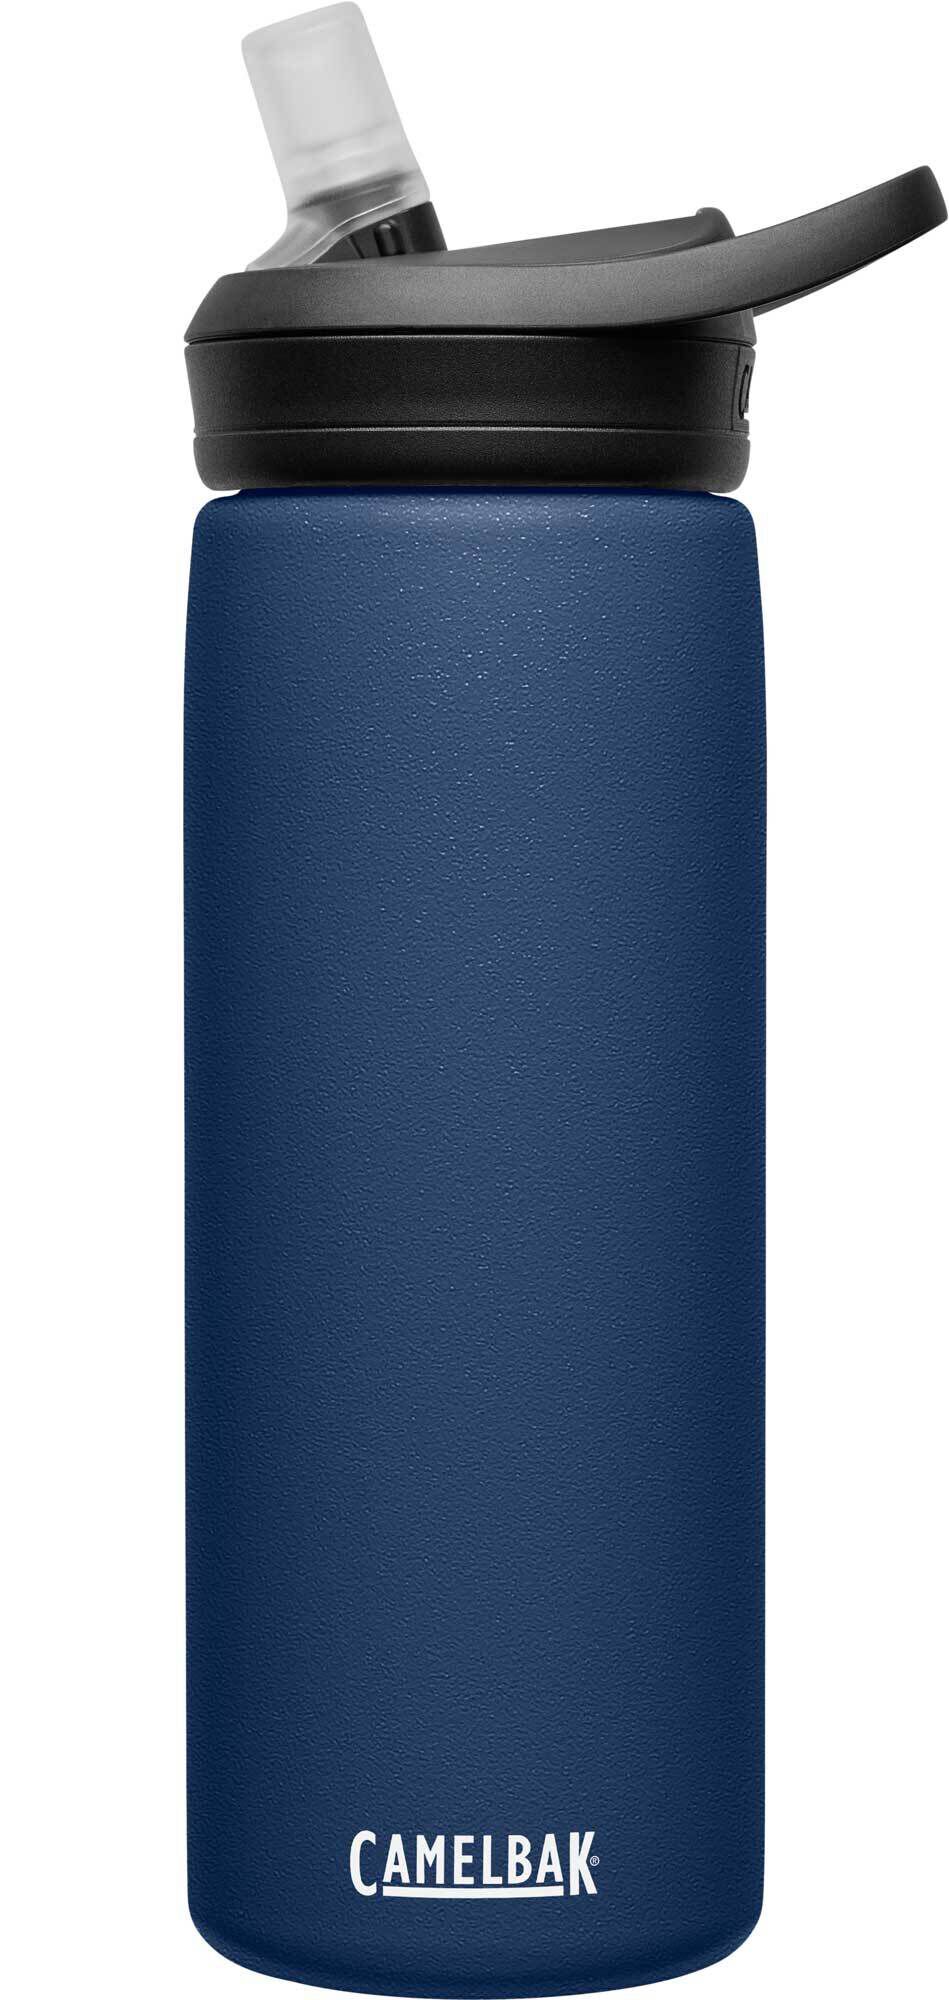 Camelbak Eddy Glass .7-Liter Water Bottle for sale online 